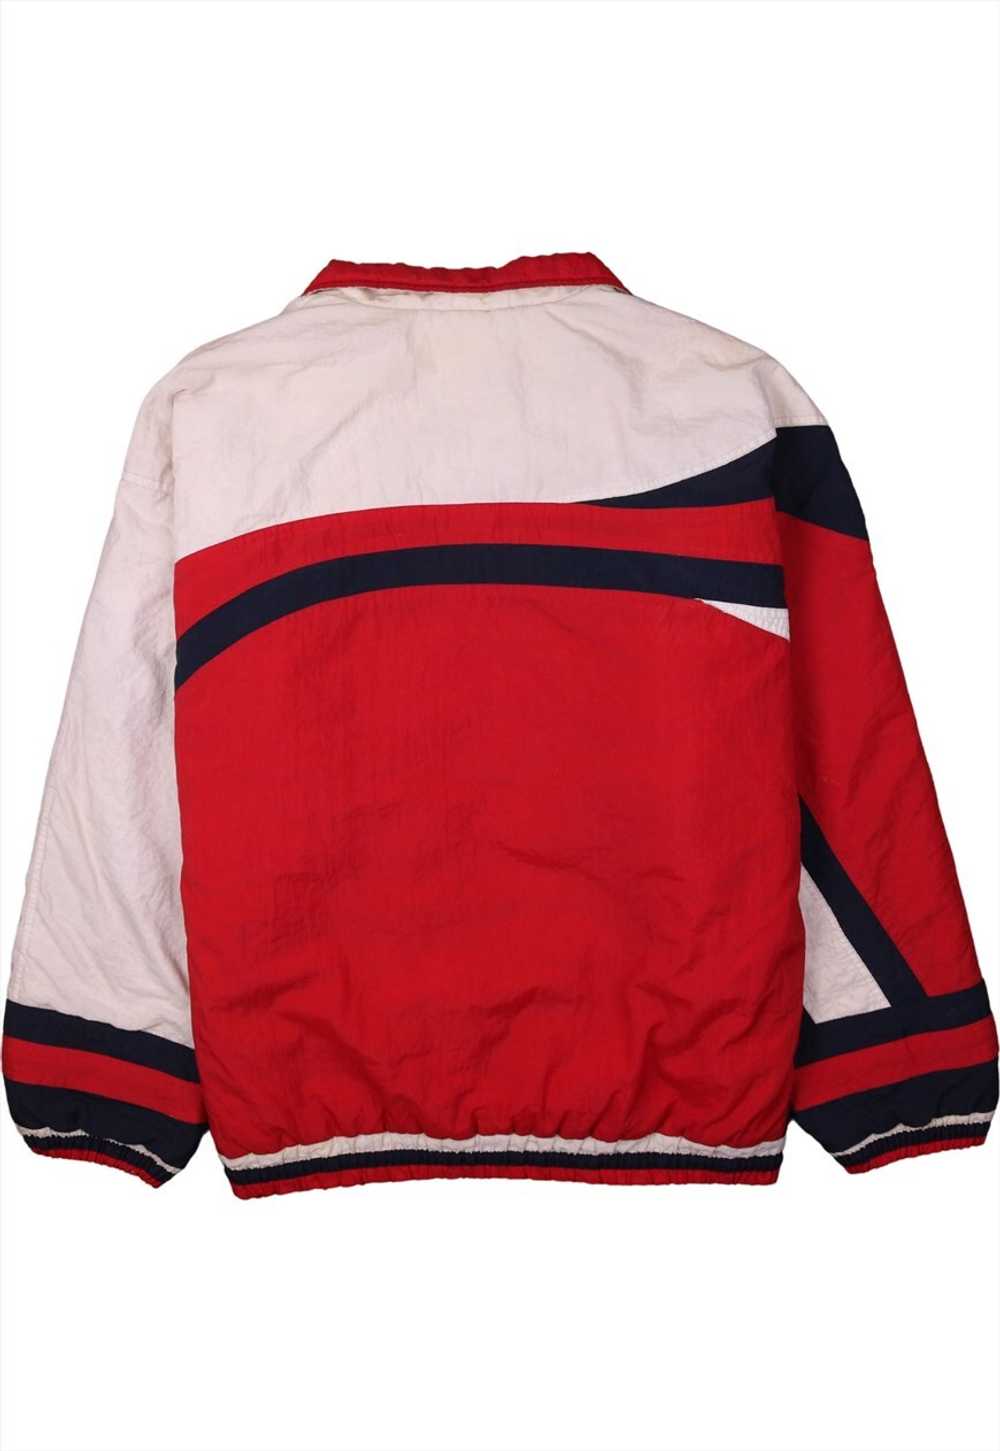 Vintage 90's Fila Windbreaker Track Jacket Retro … - image 2